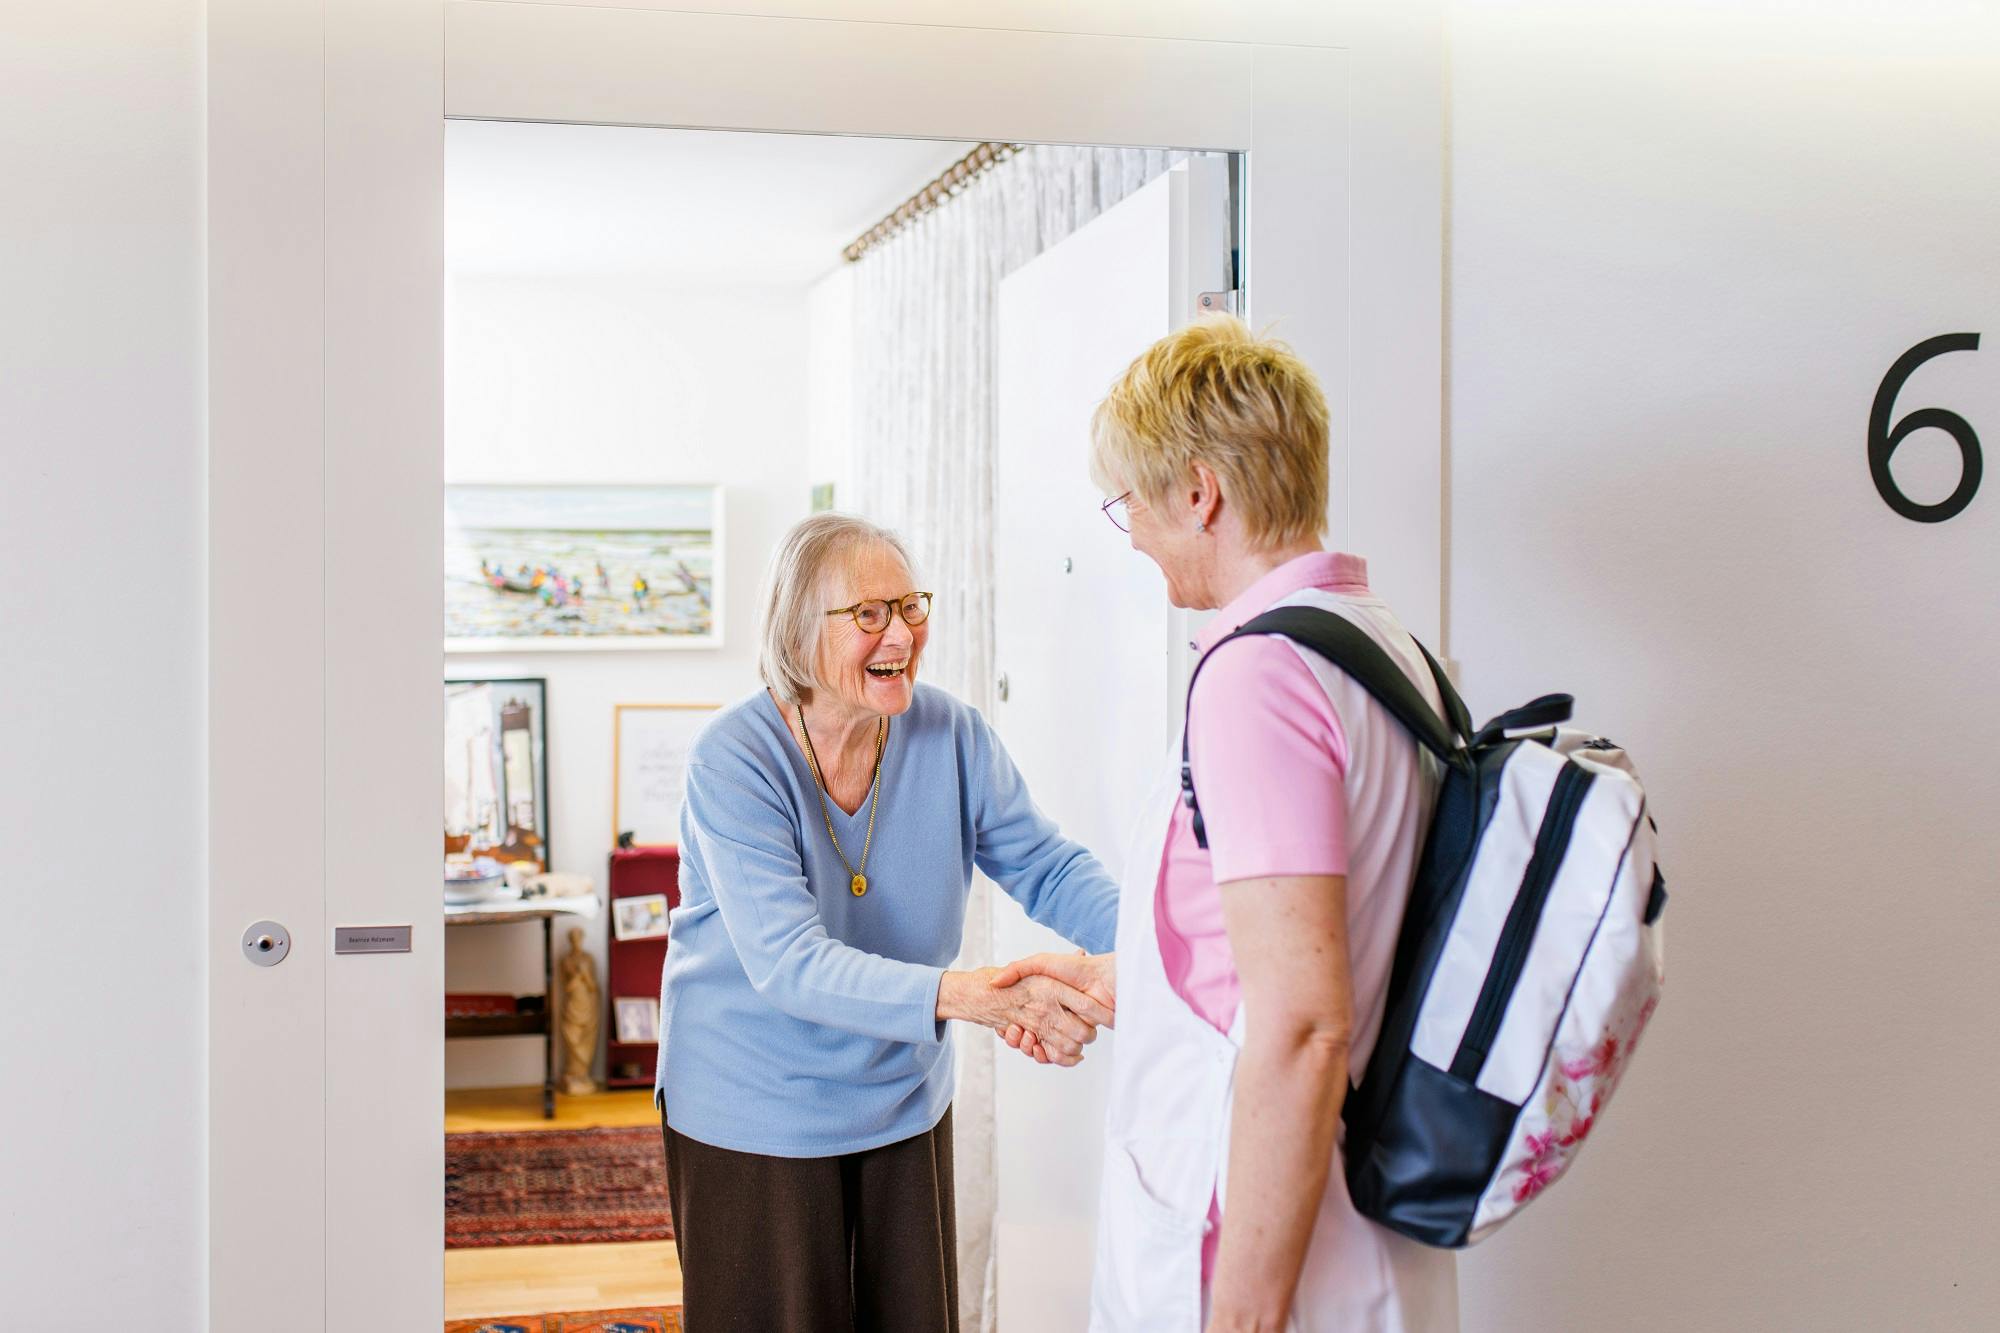 Zwei ältere Damen begrüßen sich lächelnd mit einem Handschlag an einer Haustür.